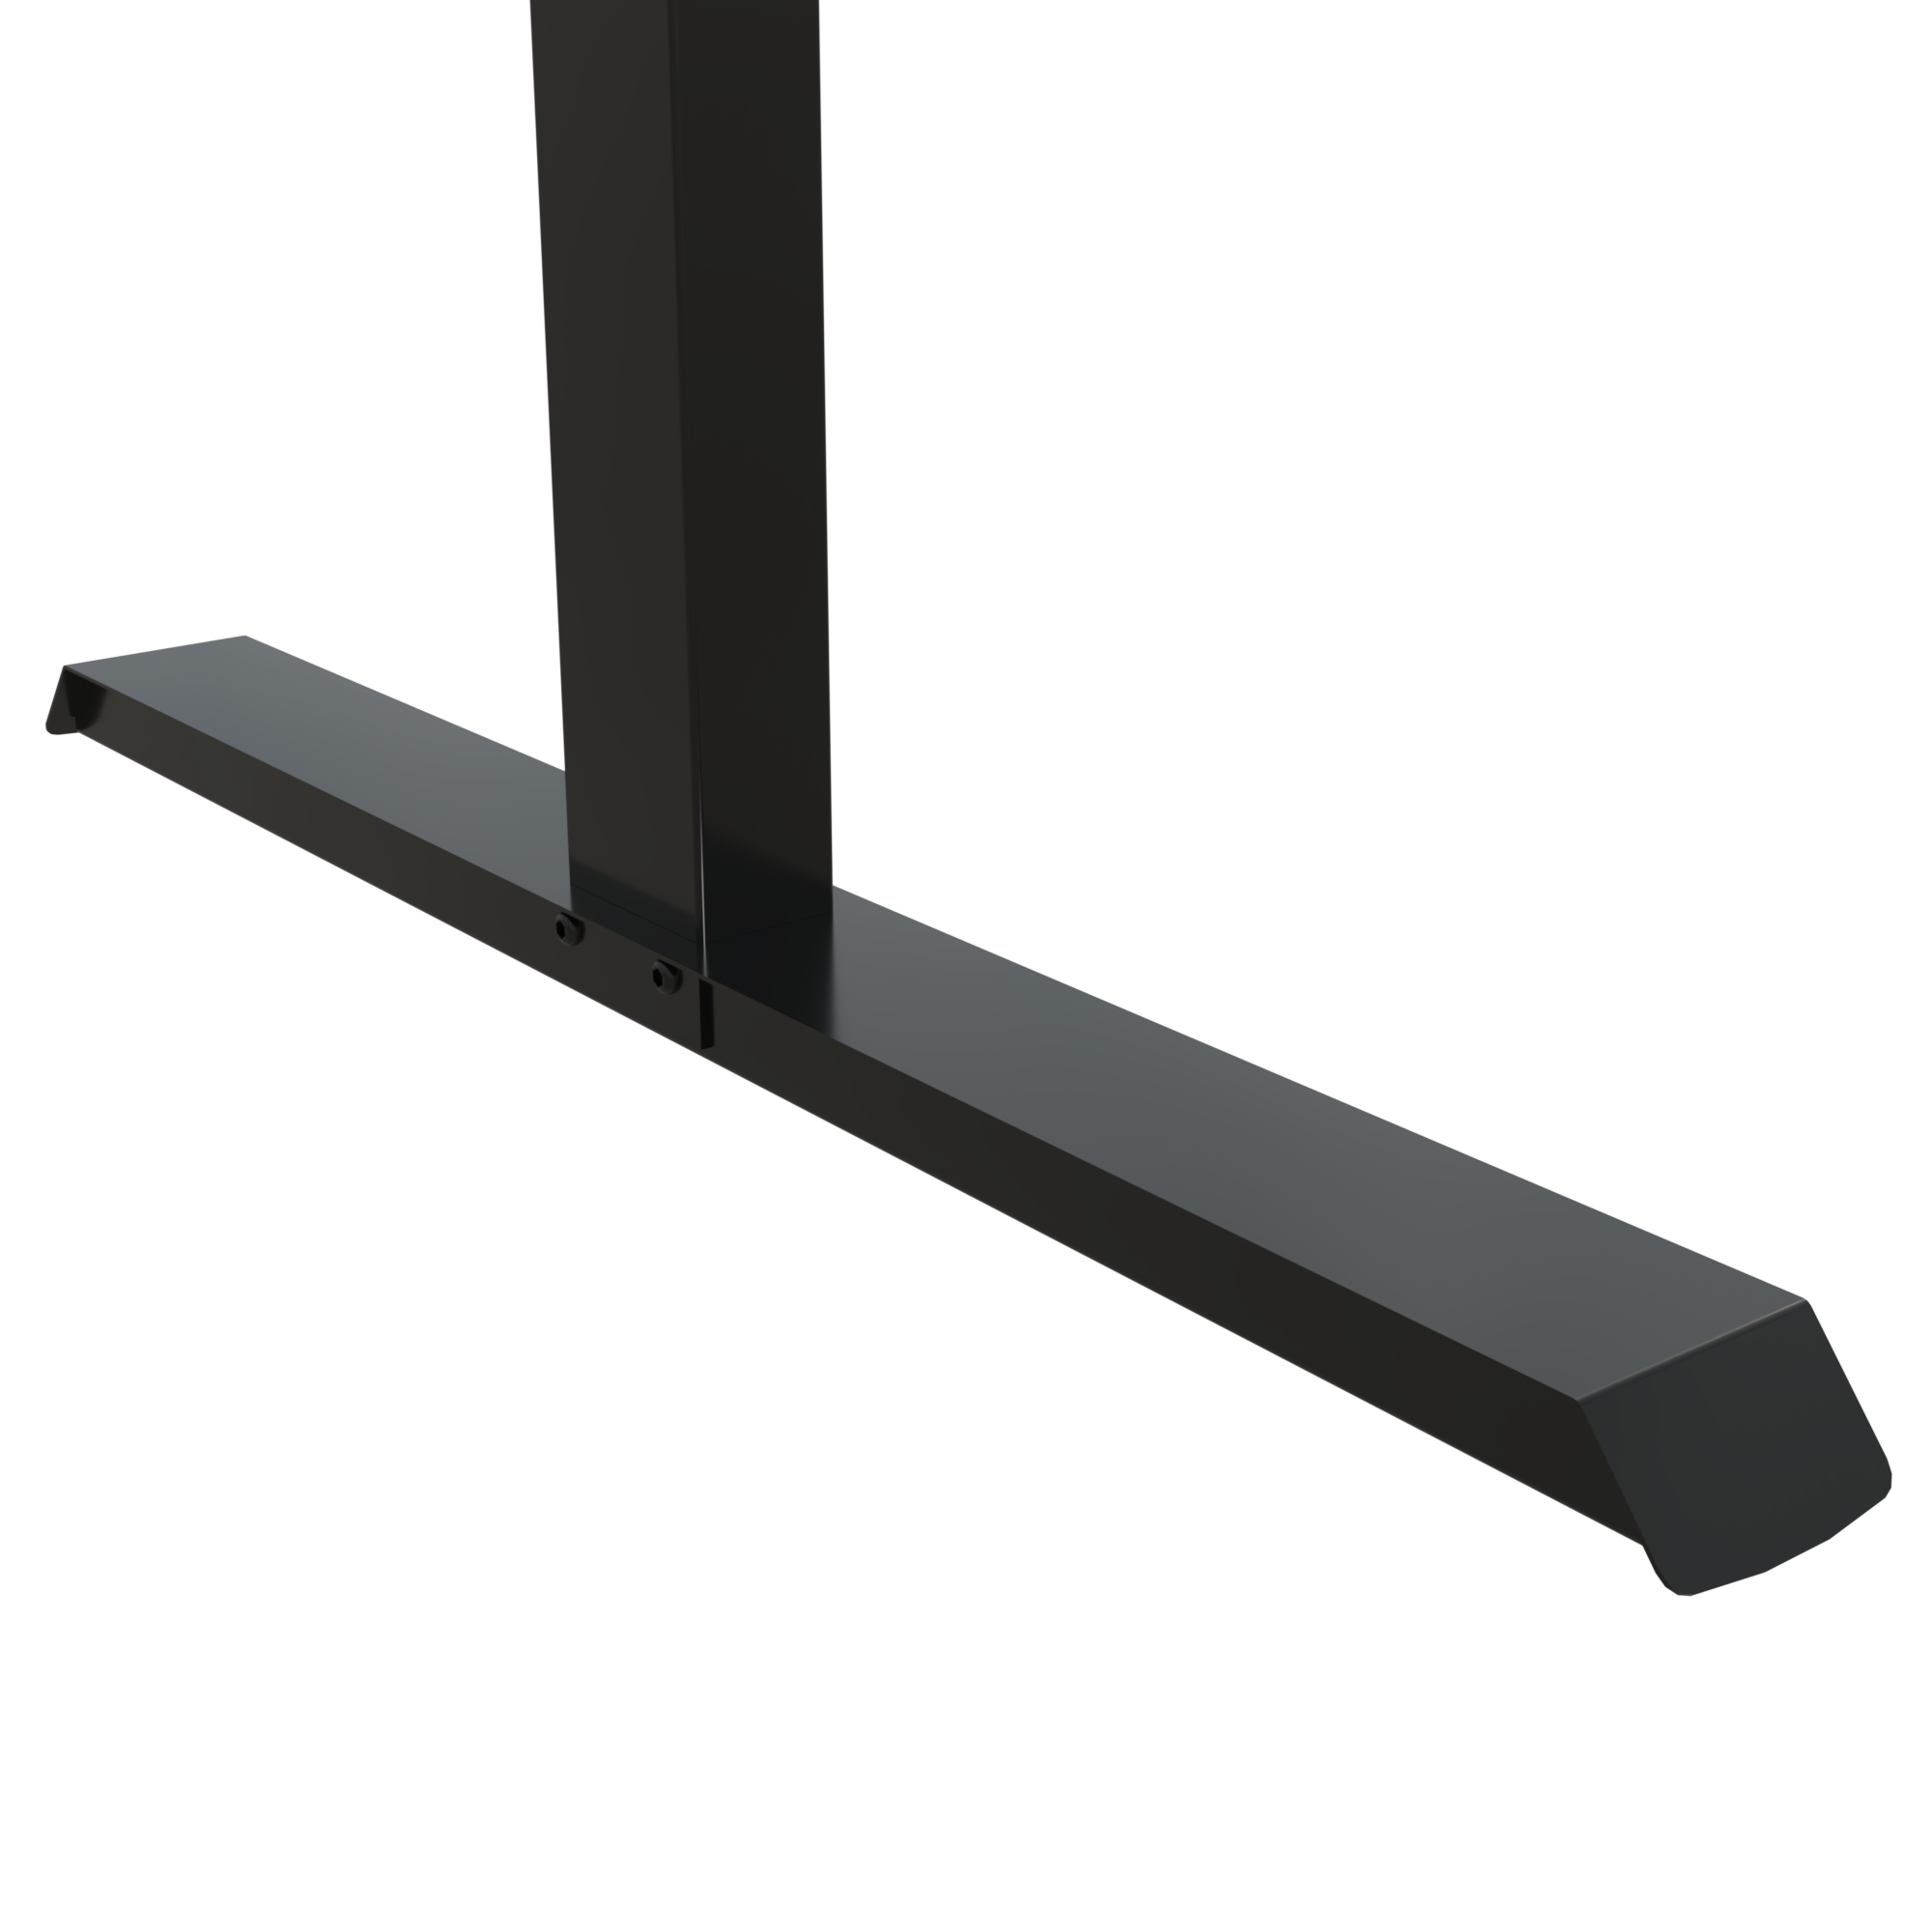 Hæve-/sænkebord | 160x80 cm | Hvid med sort stel